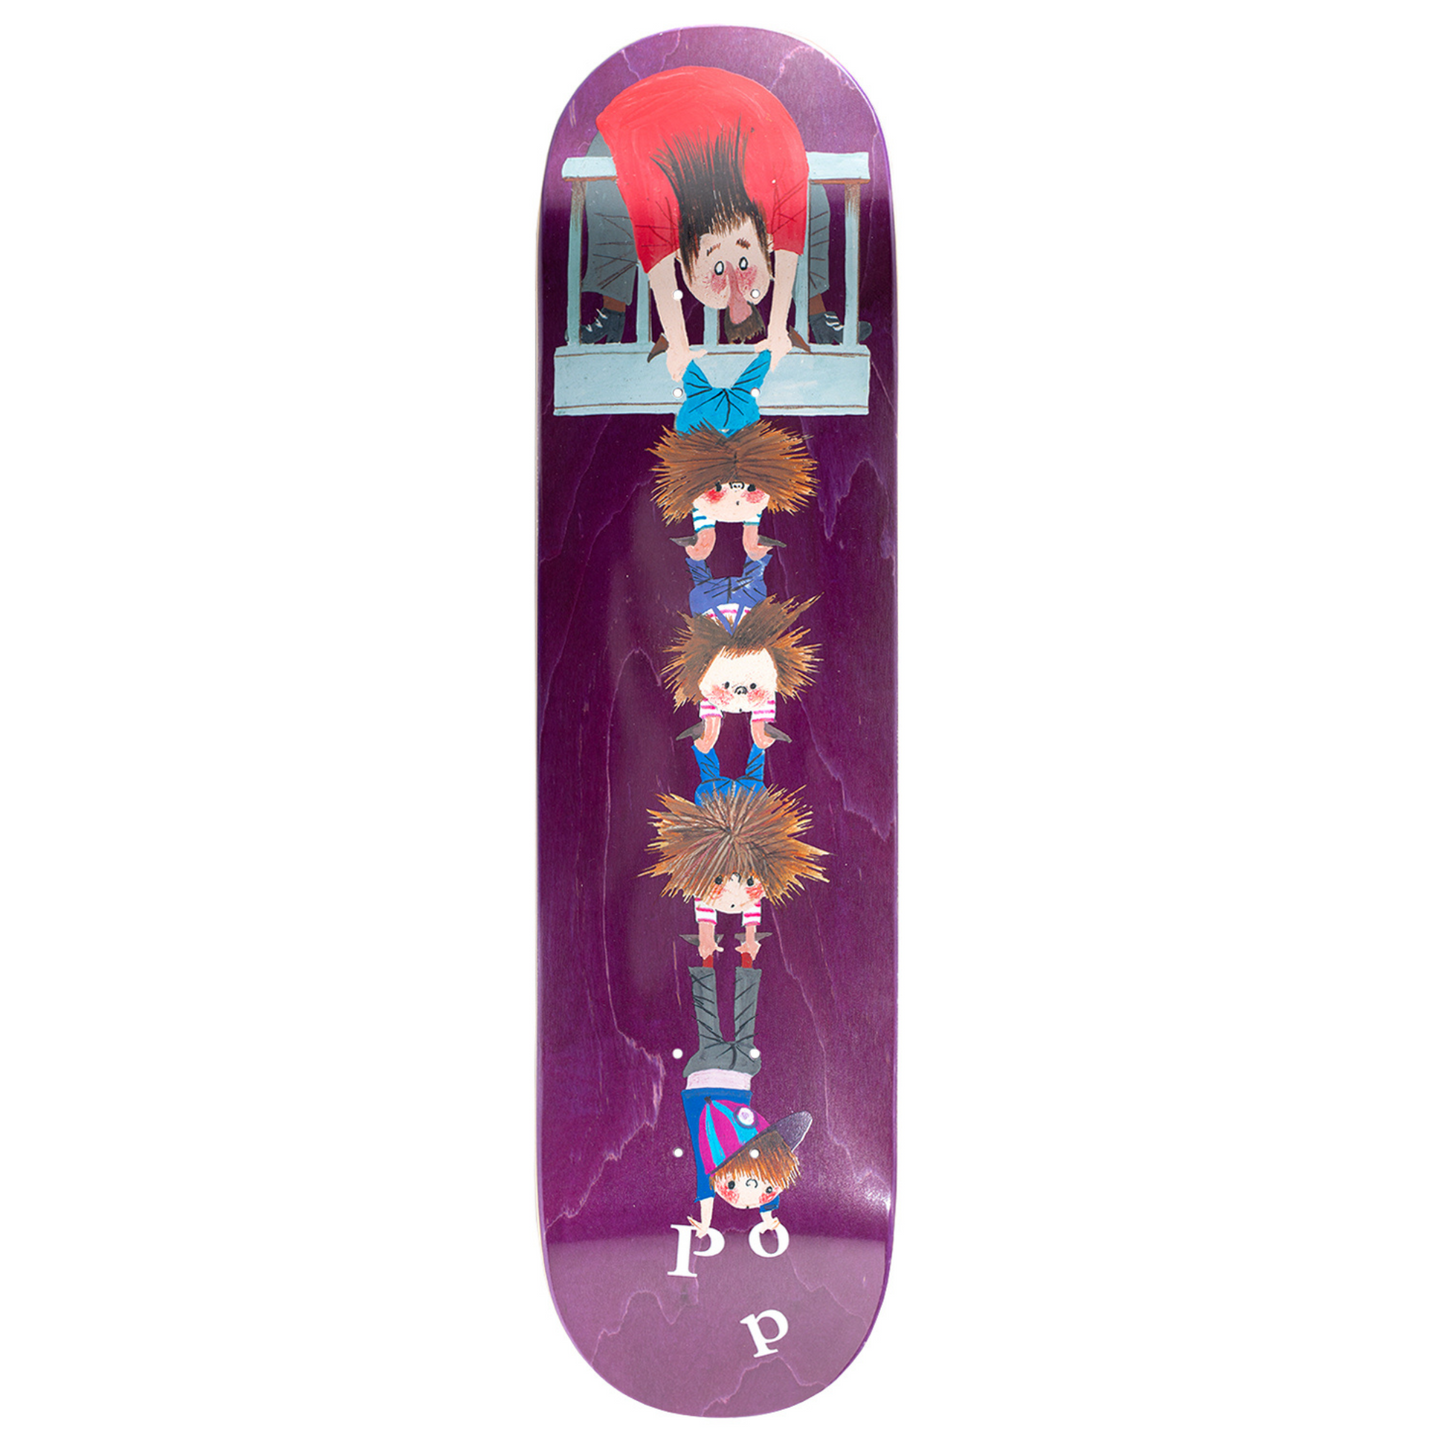 POP Fiep Skateboard Deck 7.75